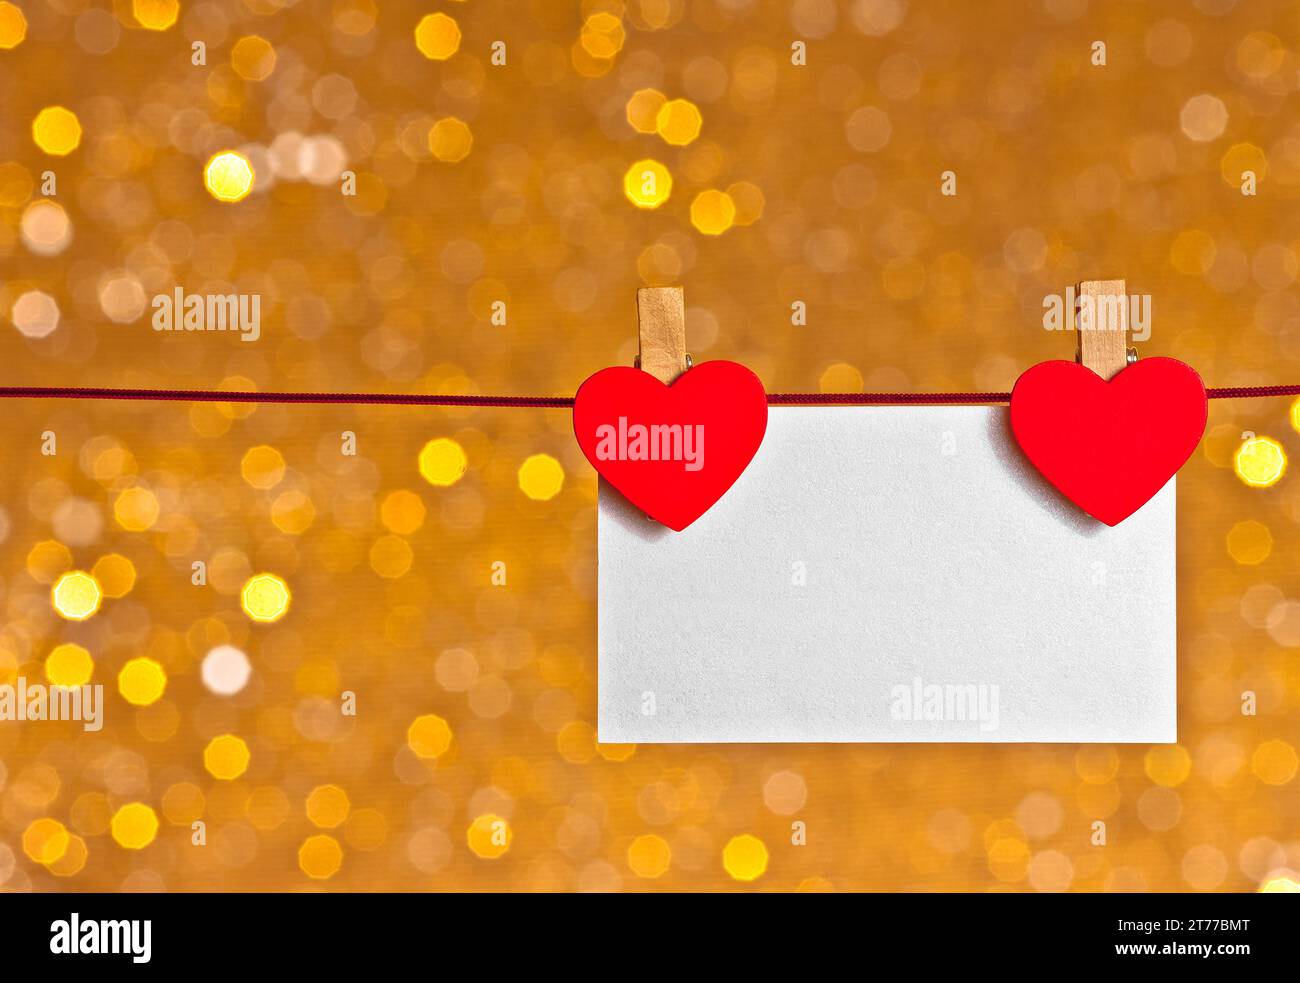 due cuori decorativi rossi con biglietto d'auguri appeso su sfondo bokeh chiaro dorato con spazio per il testo, concetto di san valentino Foto Stock